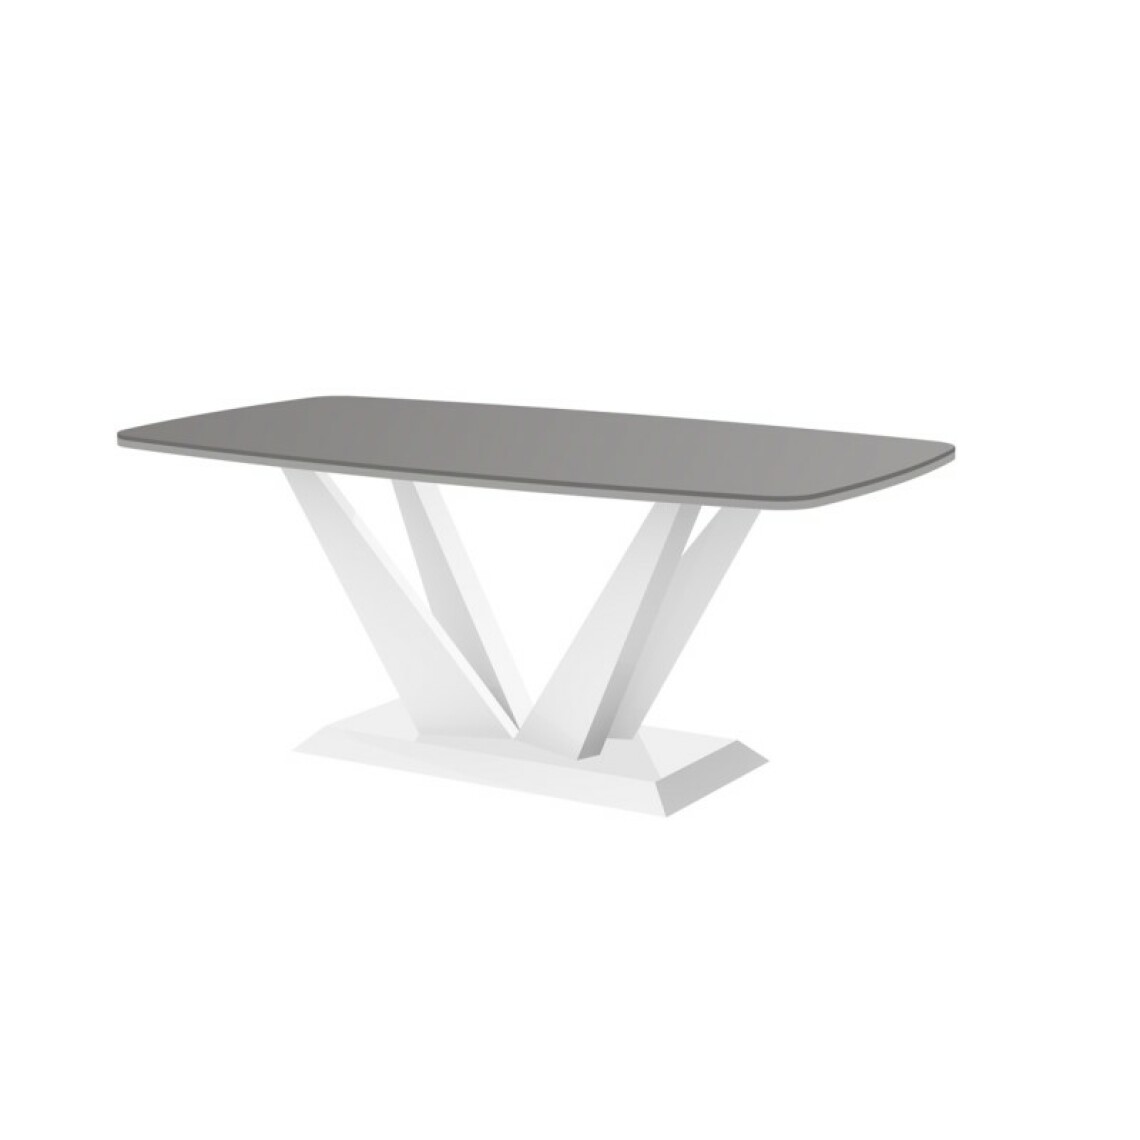 Carellia - Table basse design 125 cm x 68 cm x 50 cm - Gris - Tables basses